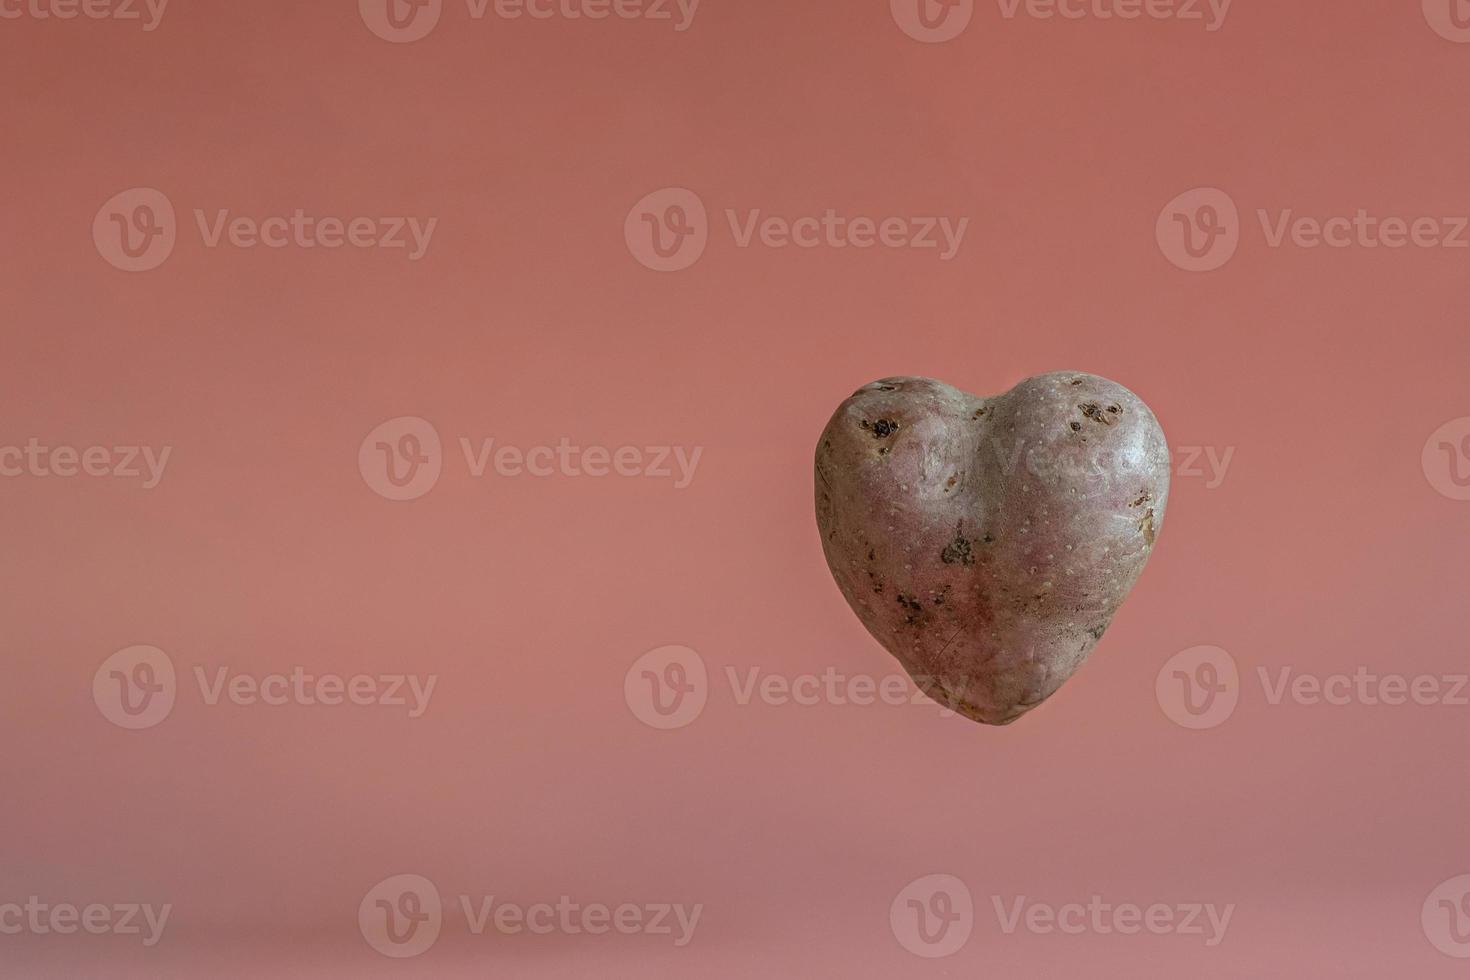 patate a forma di cuore su fondo rosa con effetto levitazione. il concetto di agricoltura, raccolta, vegetarianismo. foto